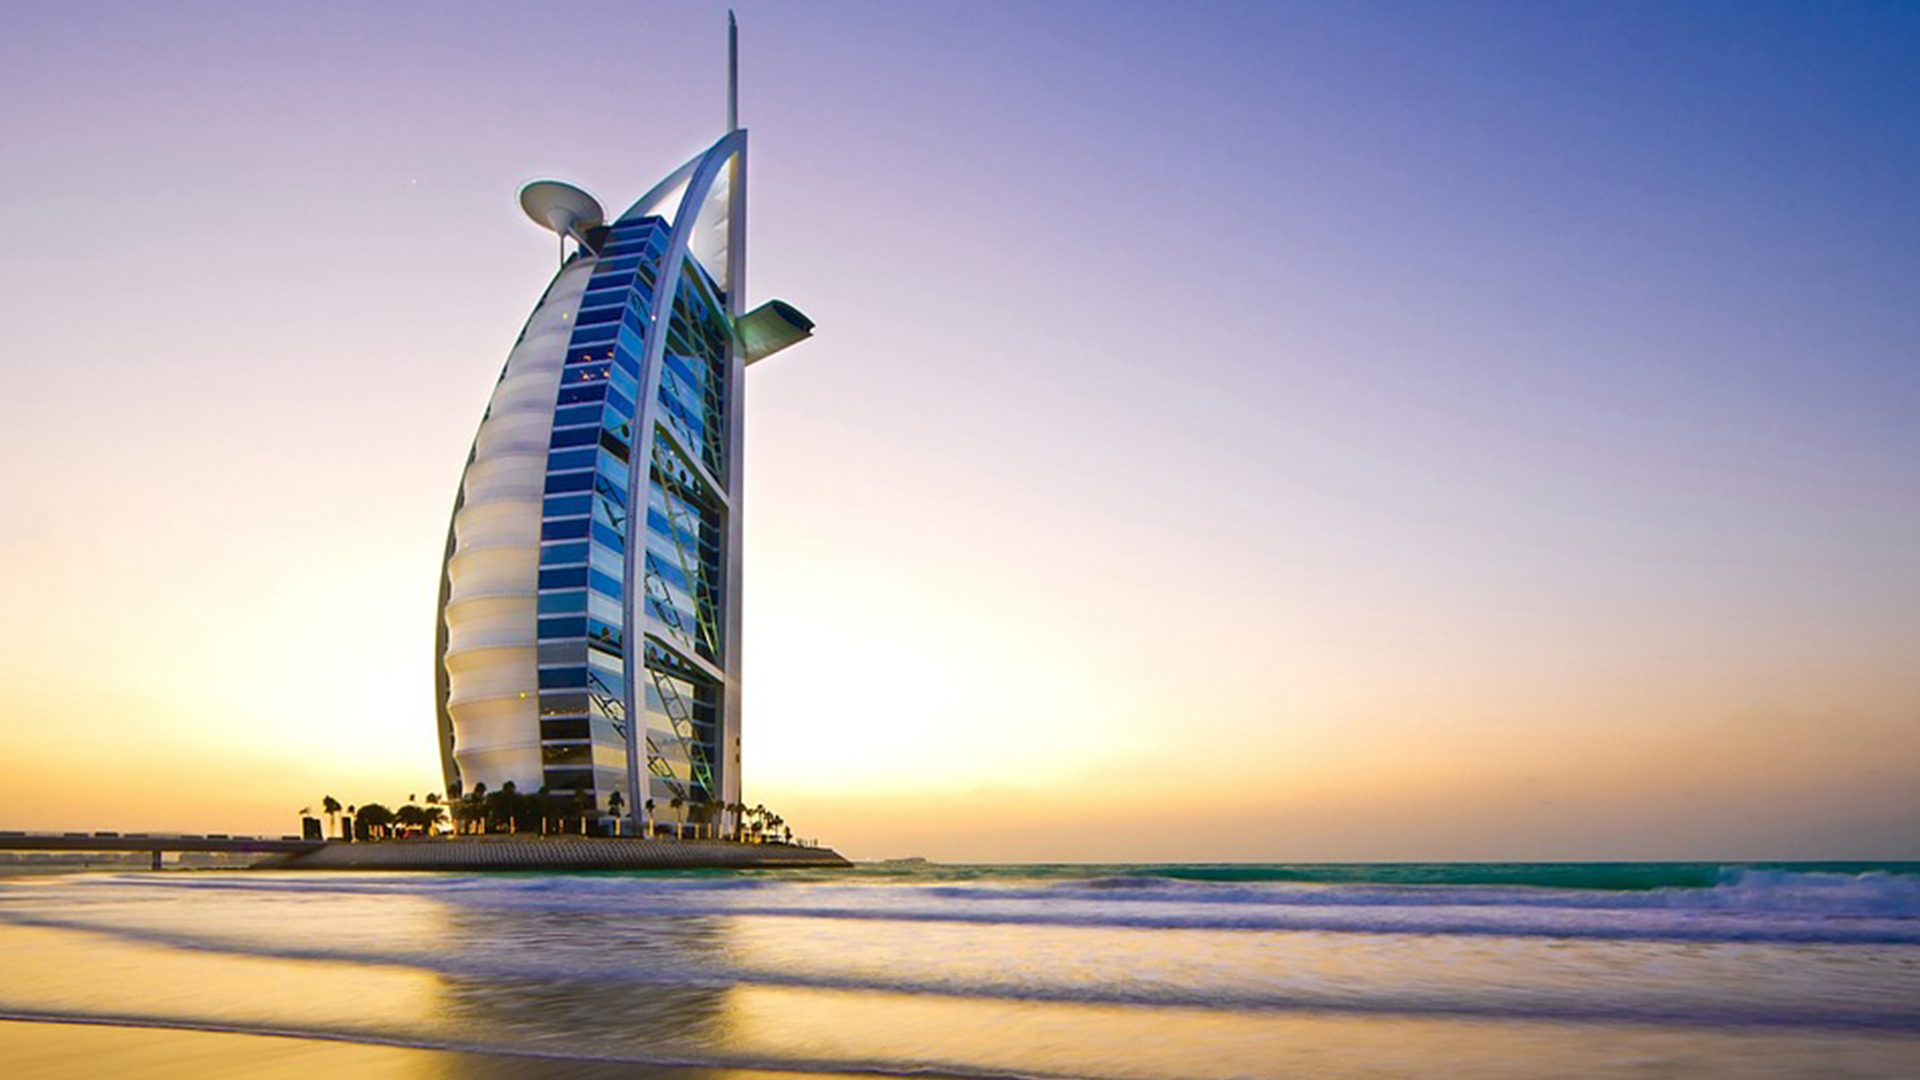 Dubai is a top tourism destination